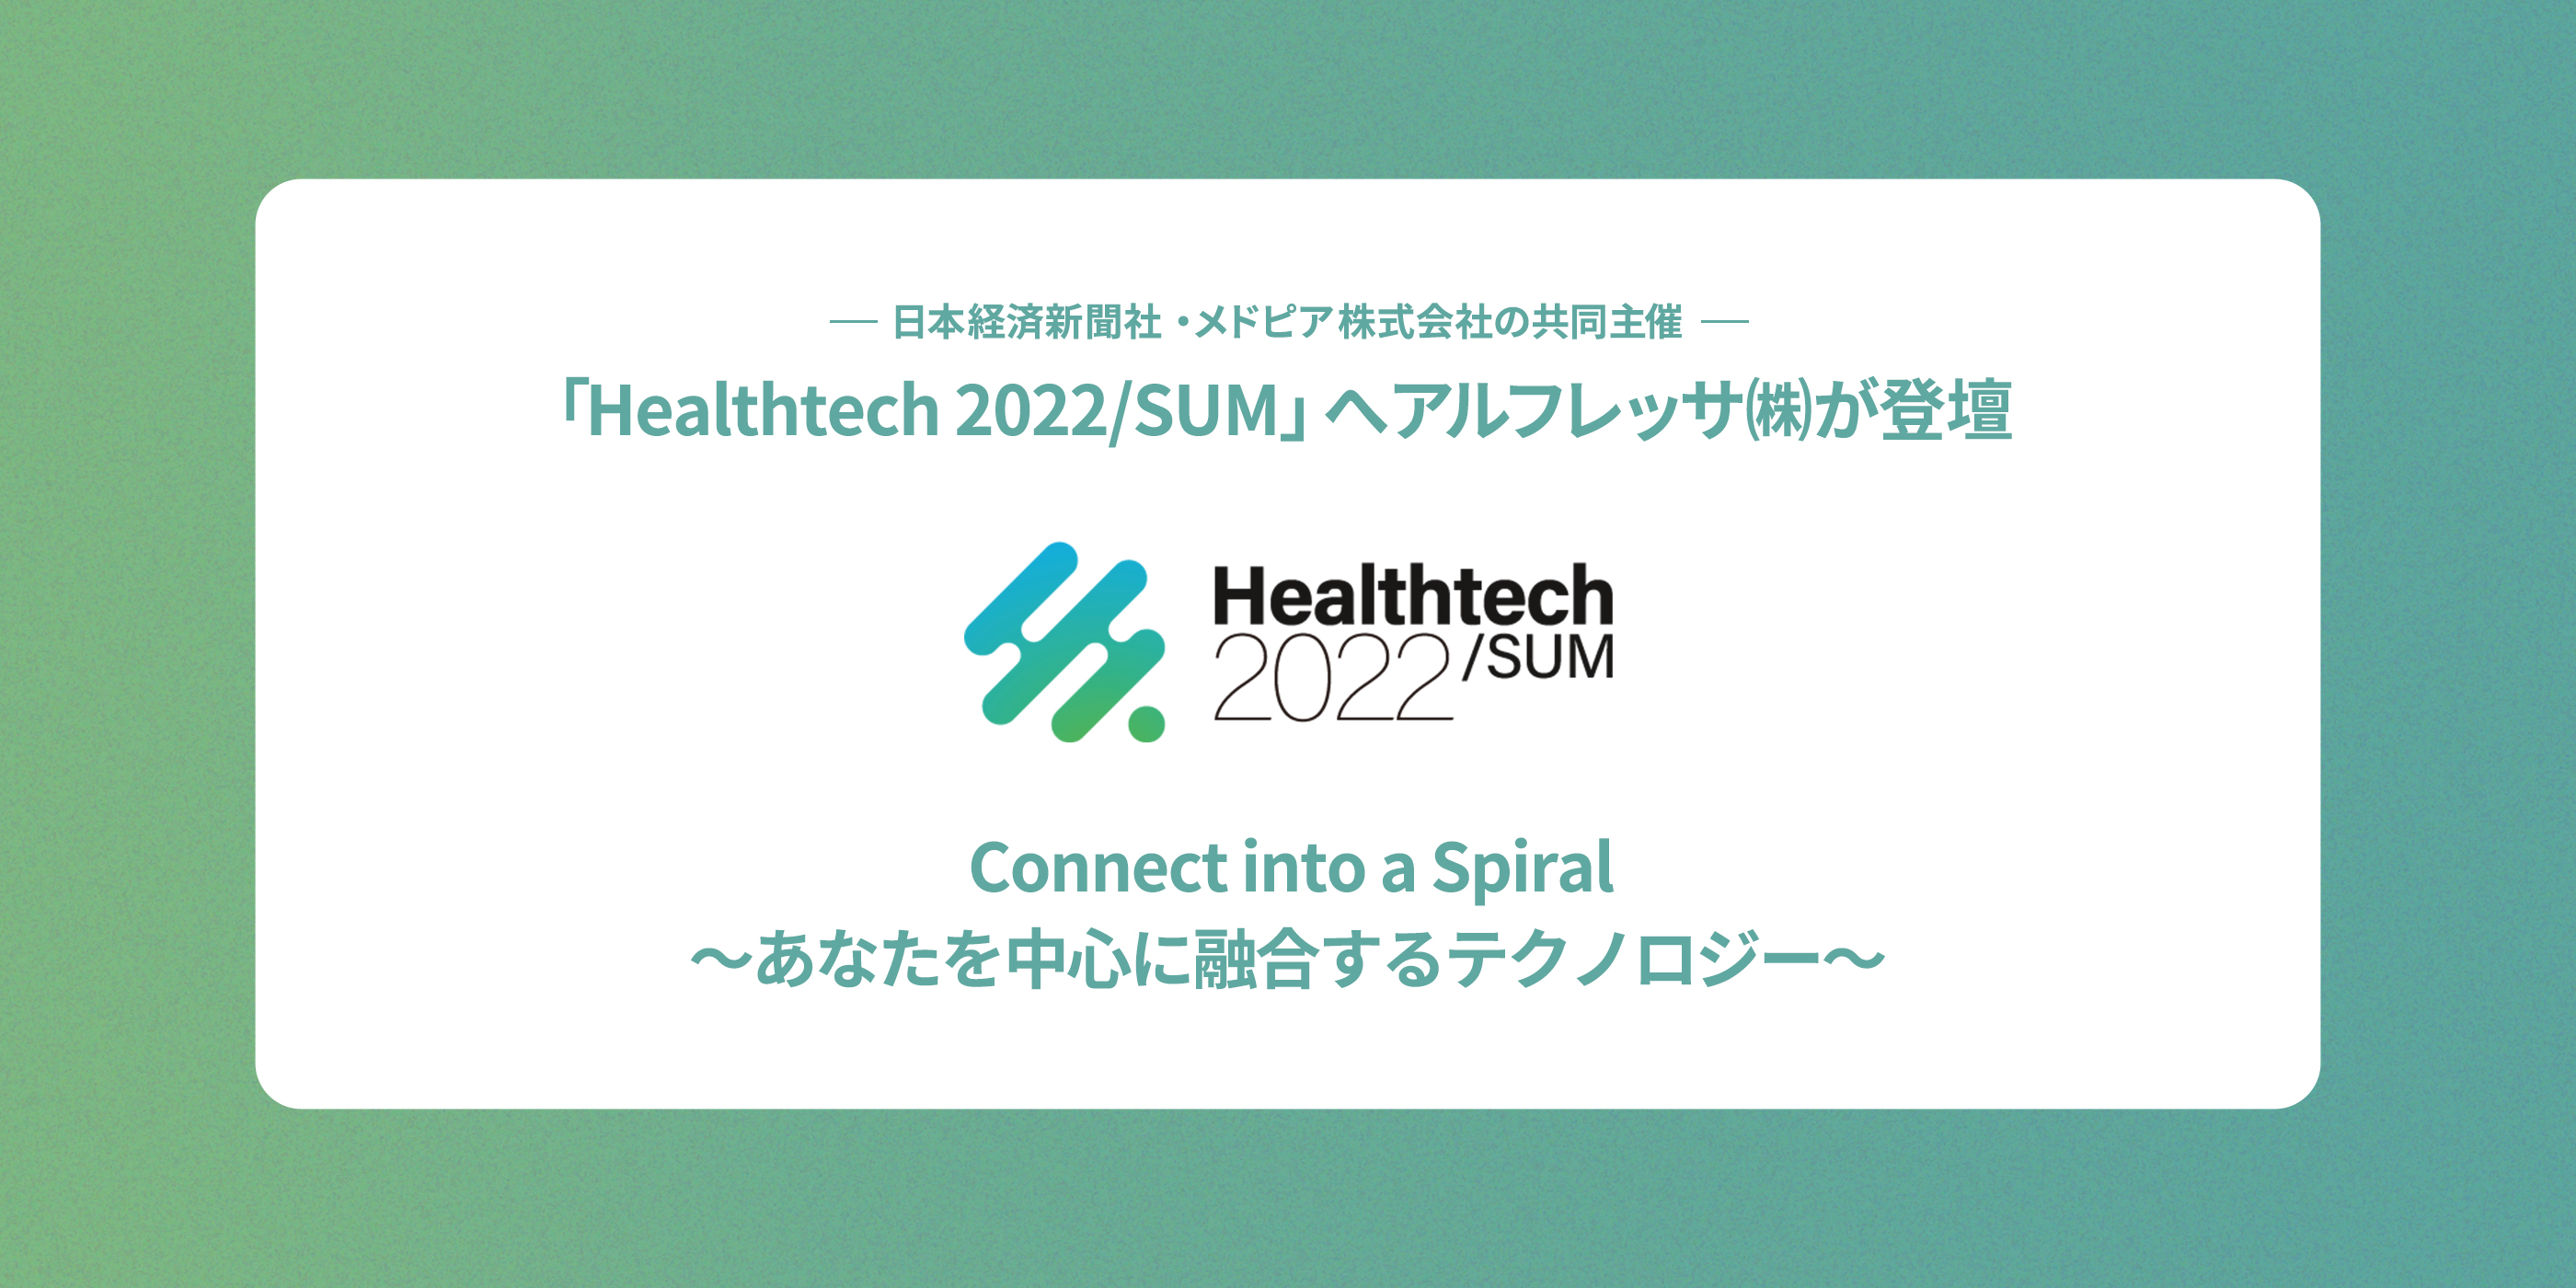 日本経済新聞社・メドピア株式会社の共同主催 「Healthtech 2022/SUM」へアルフレッサ(株)が登壇 Connect into a Spiral～あなたを中心に融合するテクノロジー～